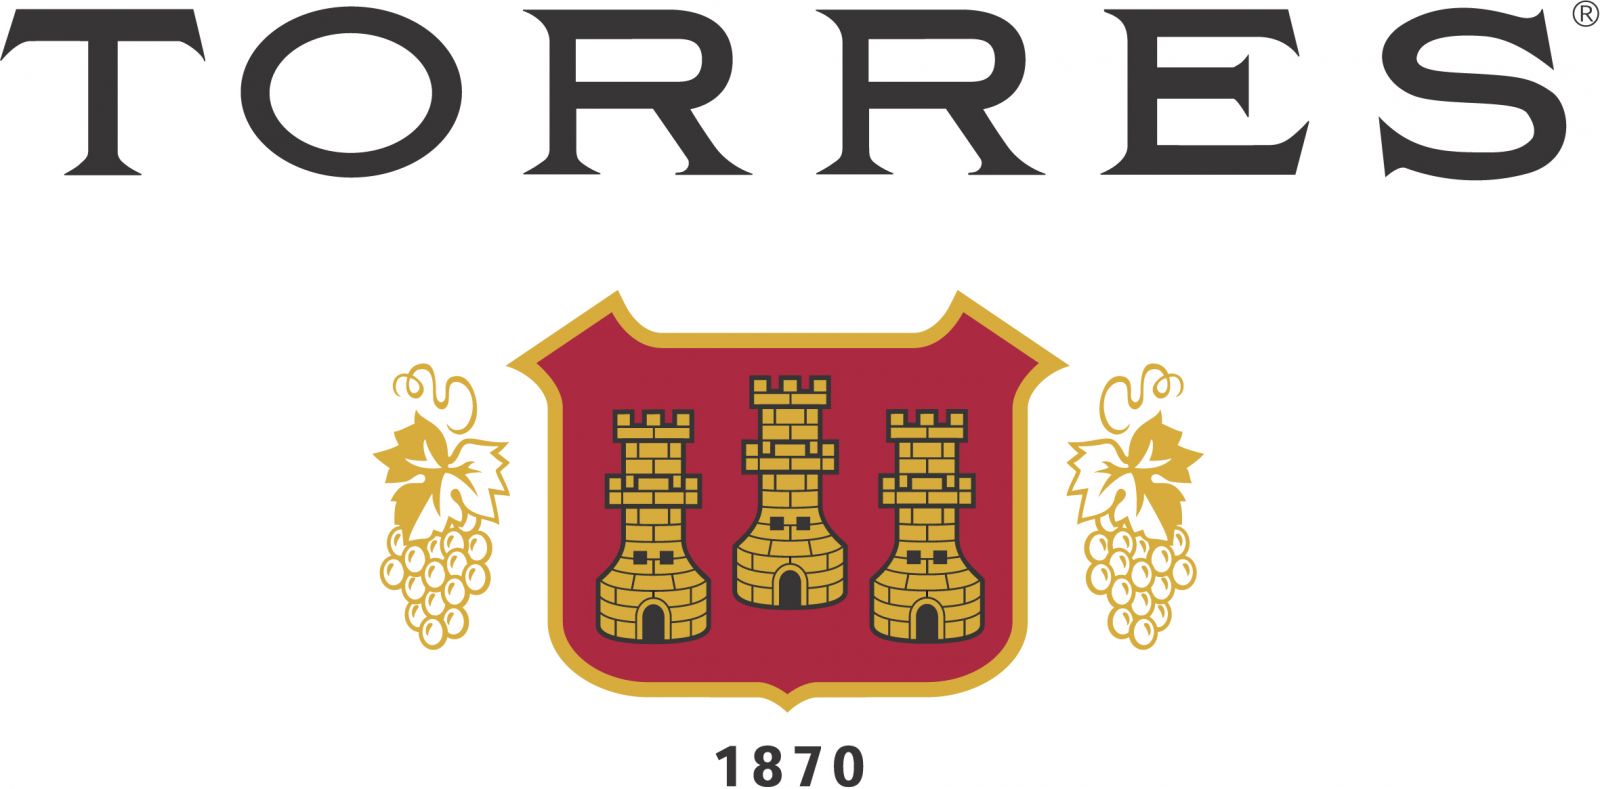 Torres wijn